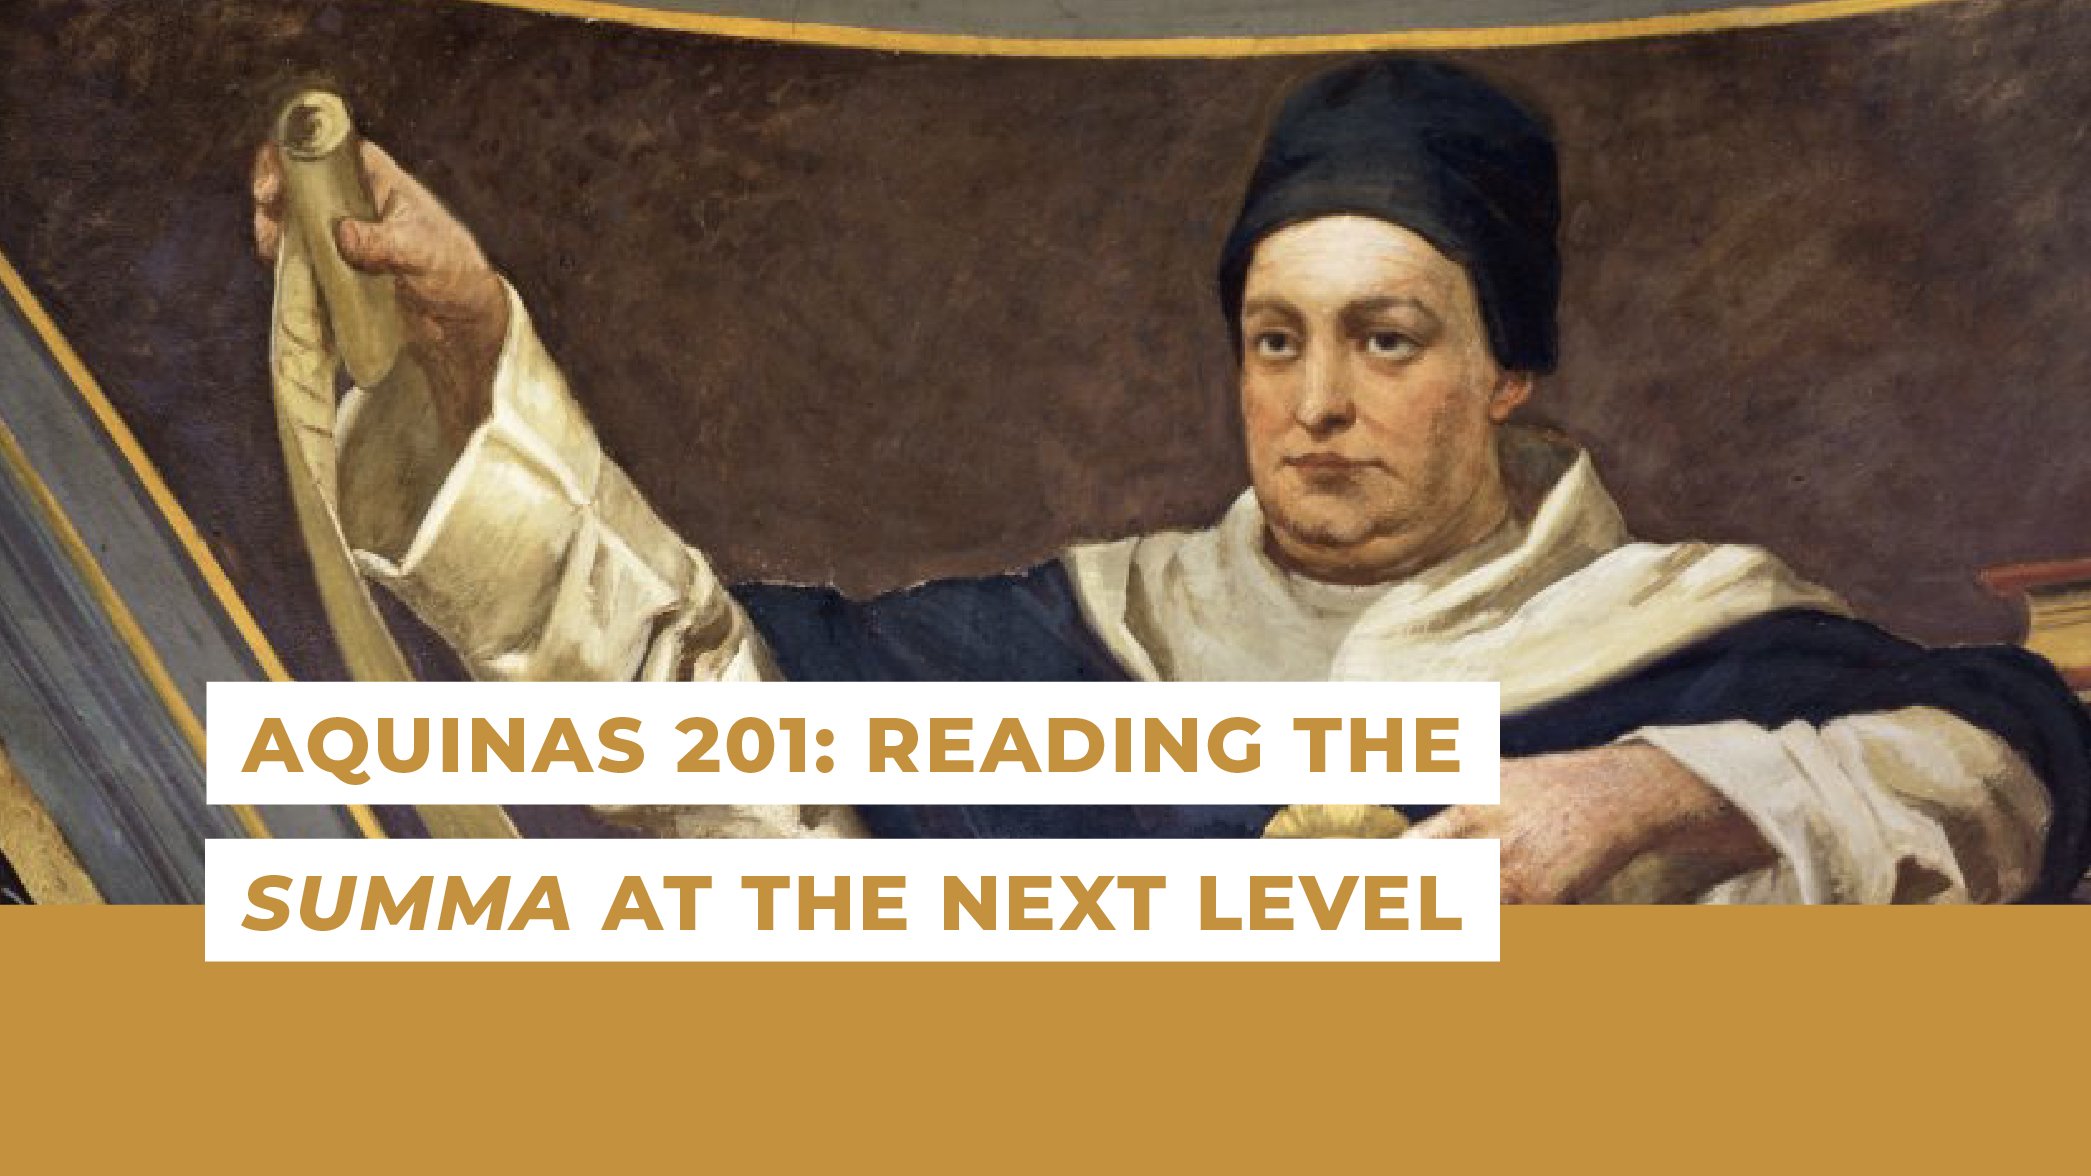 Aquinas 201: Reading the Summa at the Next Level